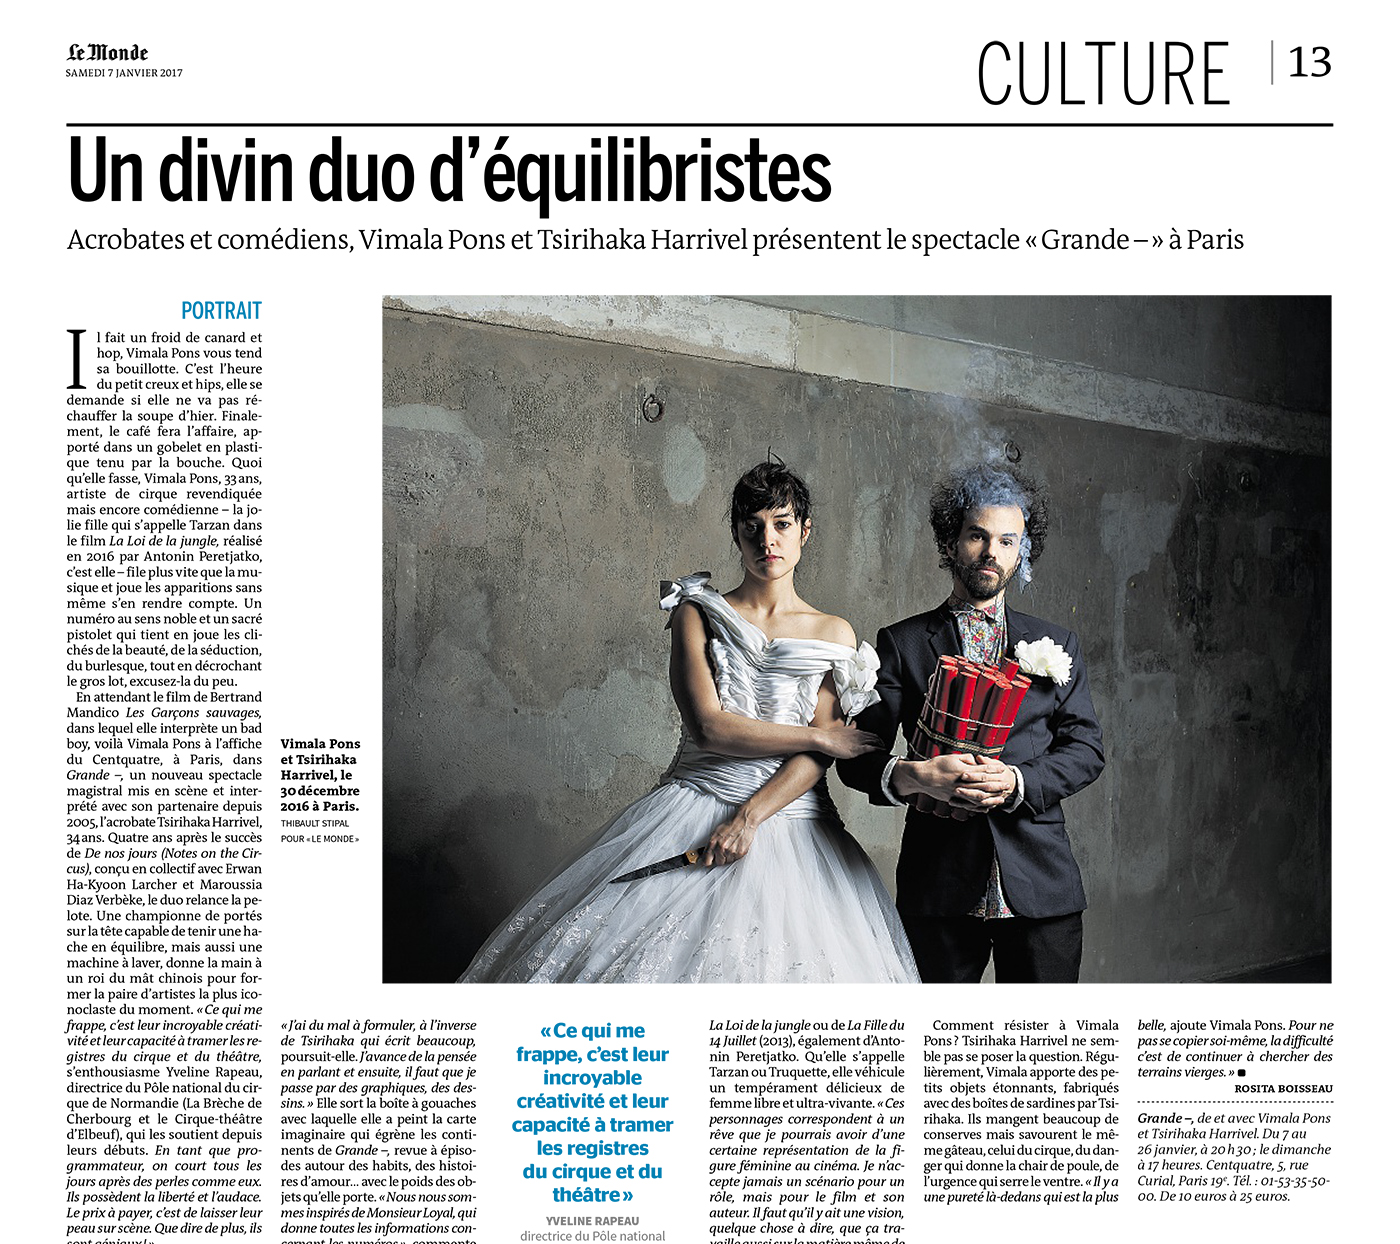 Thibault Stipal - Photographe - Vimala & Tsirihaka pour Le Monde - 1